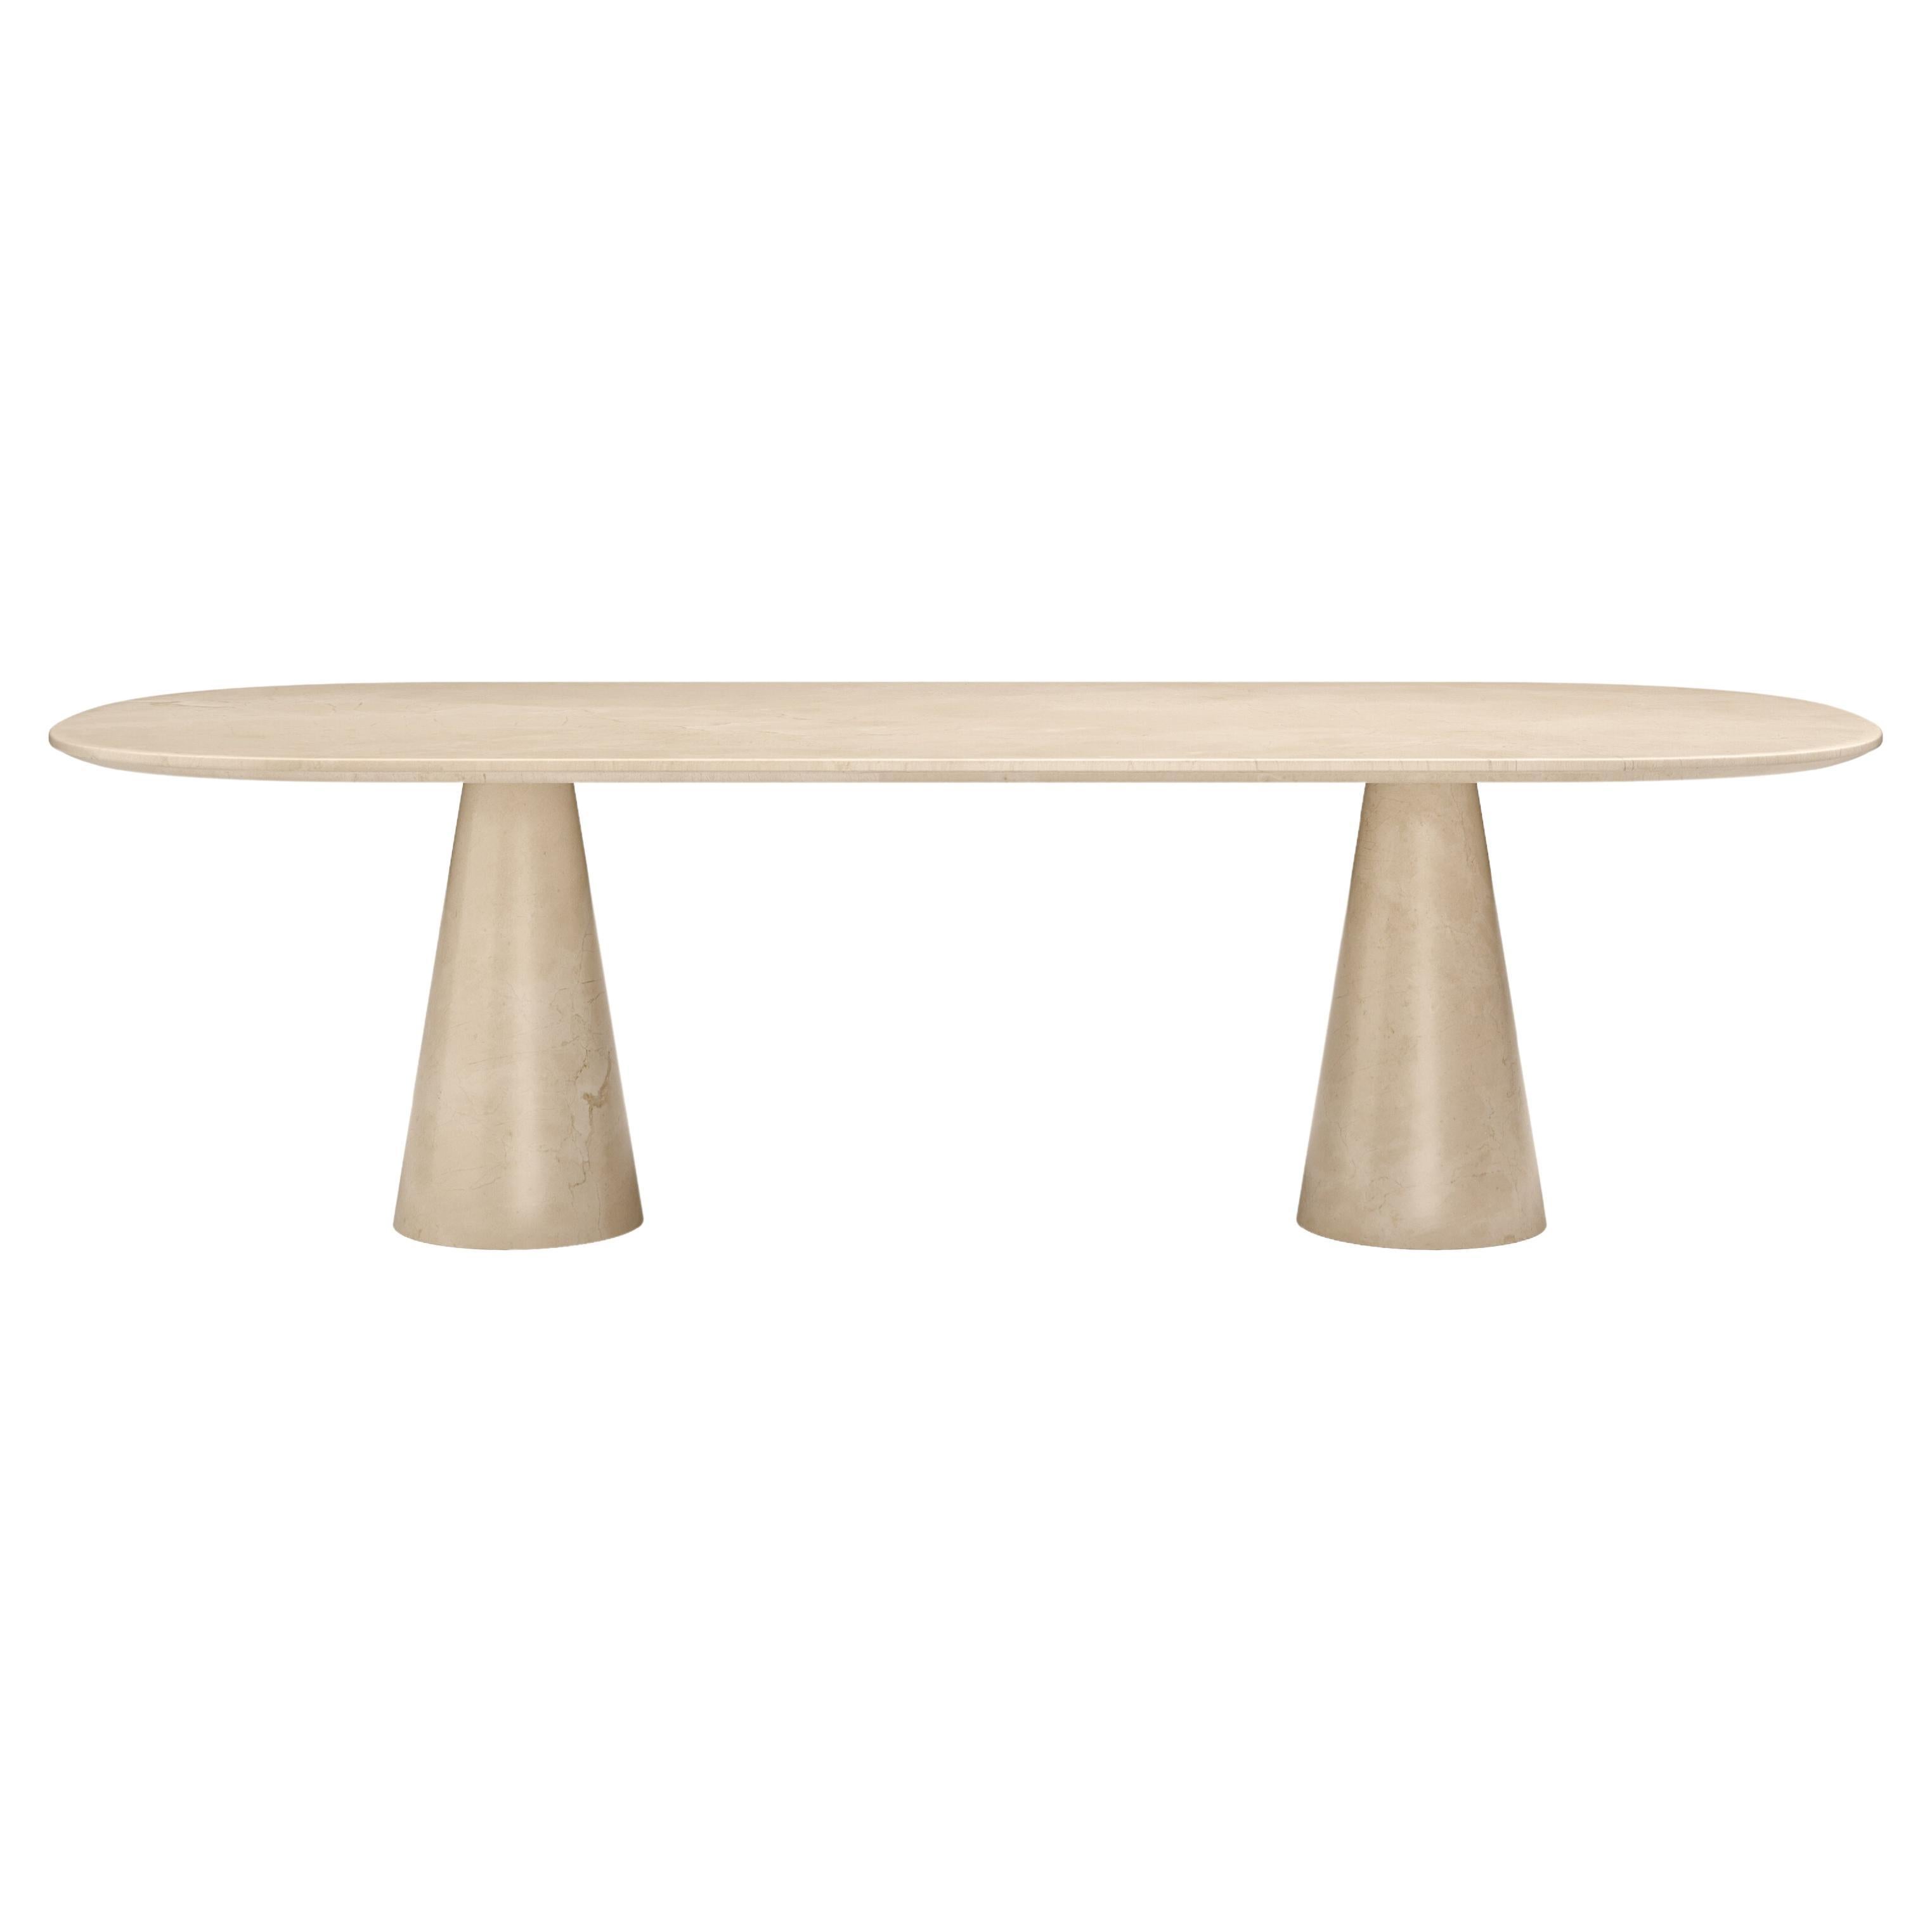 FORM(LA) Cono Oval Dining Table 108”L x 48”W x 30”H Crema Marfil Marble